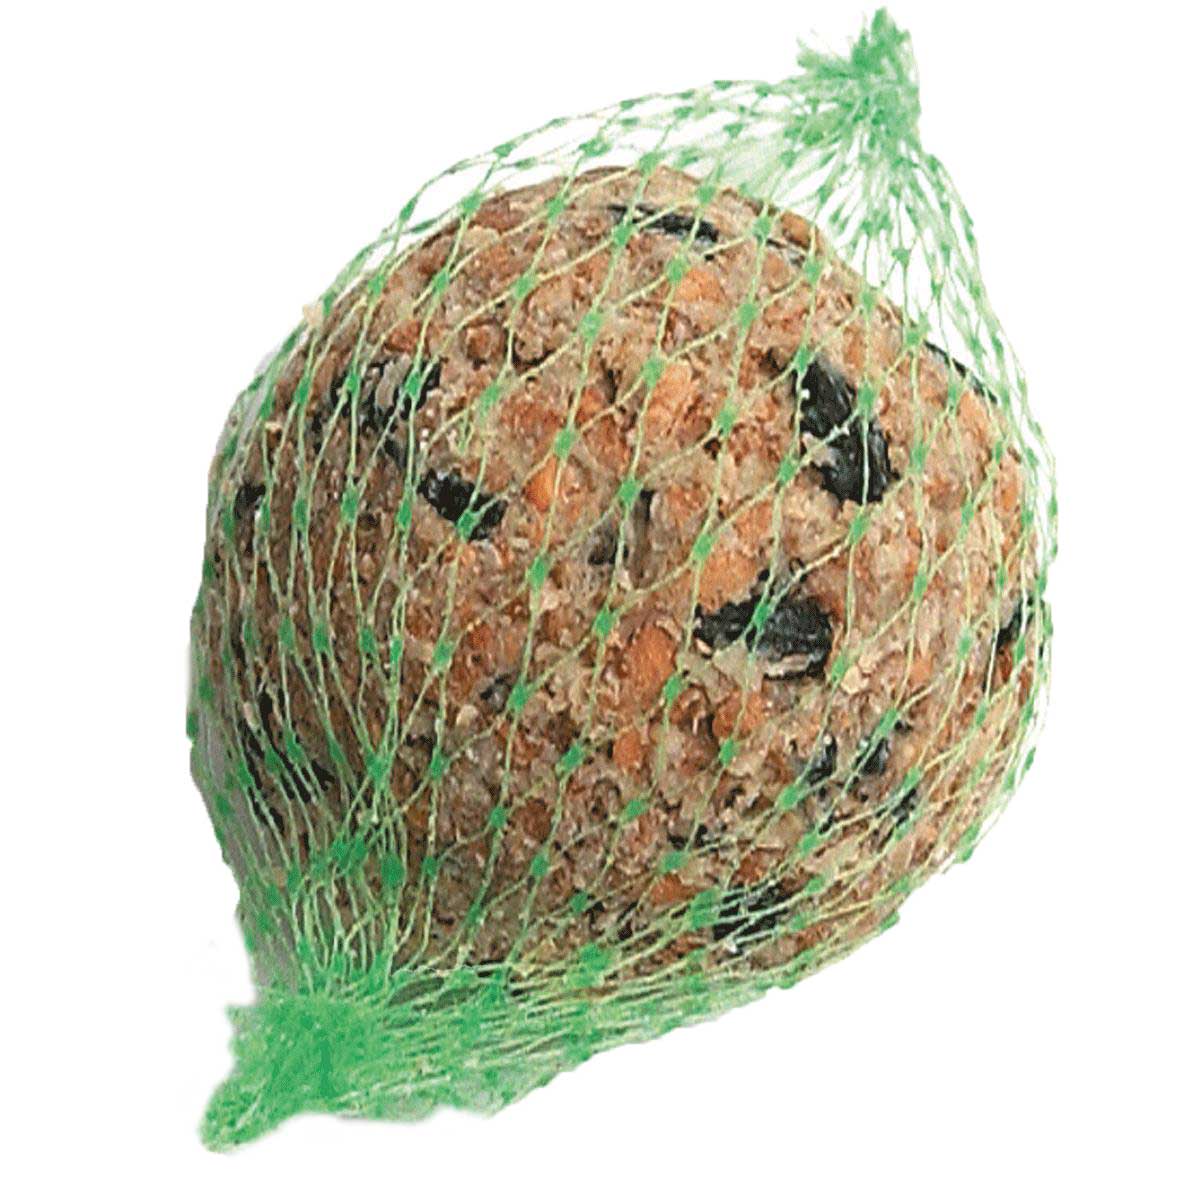 Erdtmanns 100 Bird fat balls with net